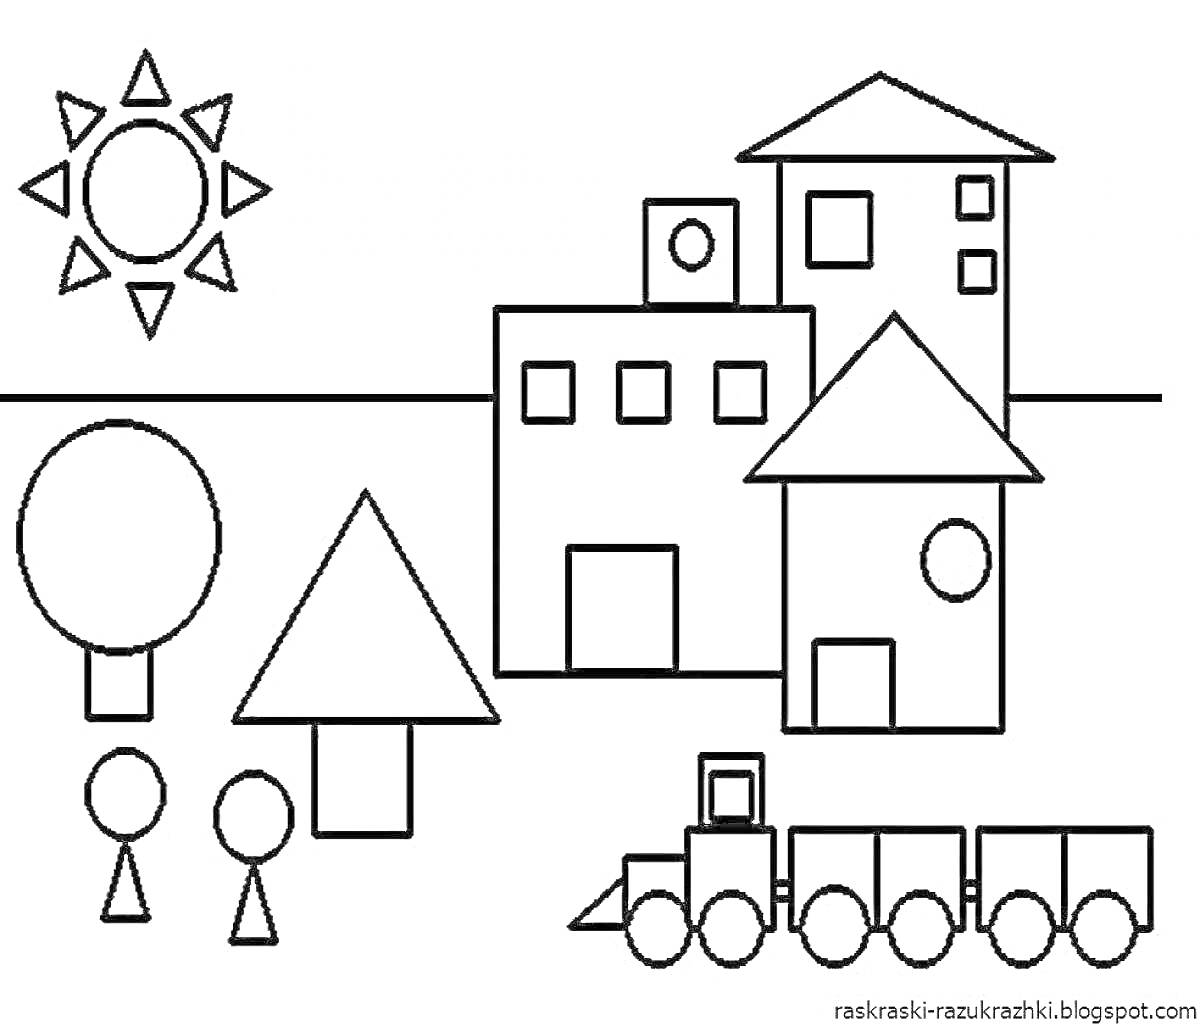 На раскраске изображено: Геометрические фигуры, Солнце, Дом, Поезд, Деревья, Человек, Квадраты, Круги, Треугольники